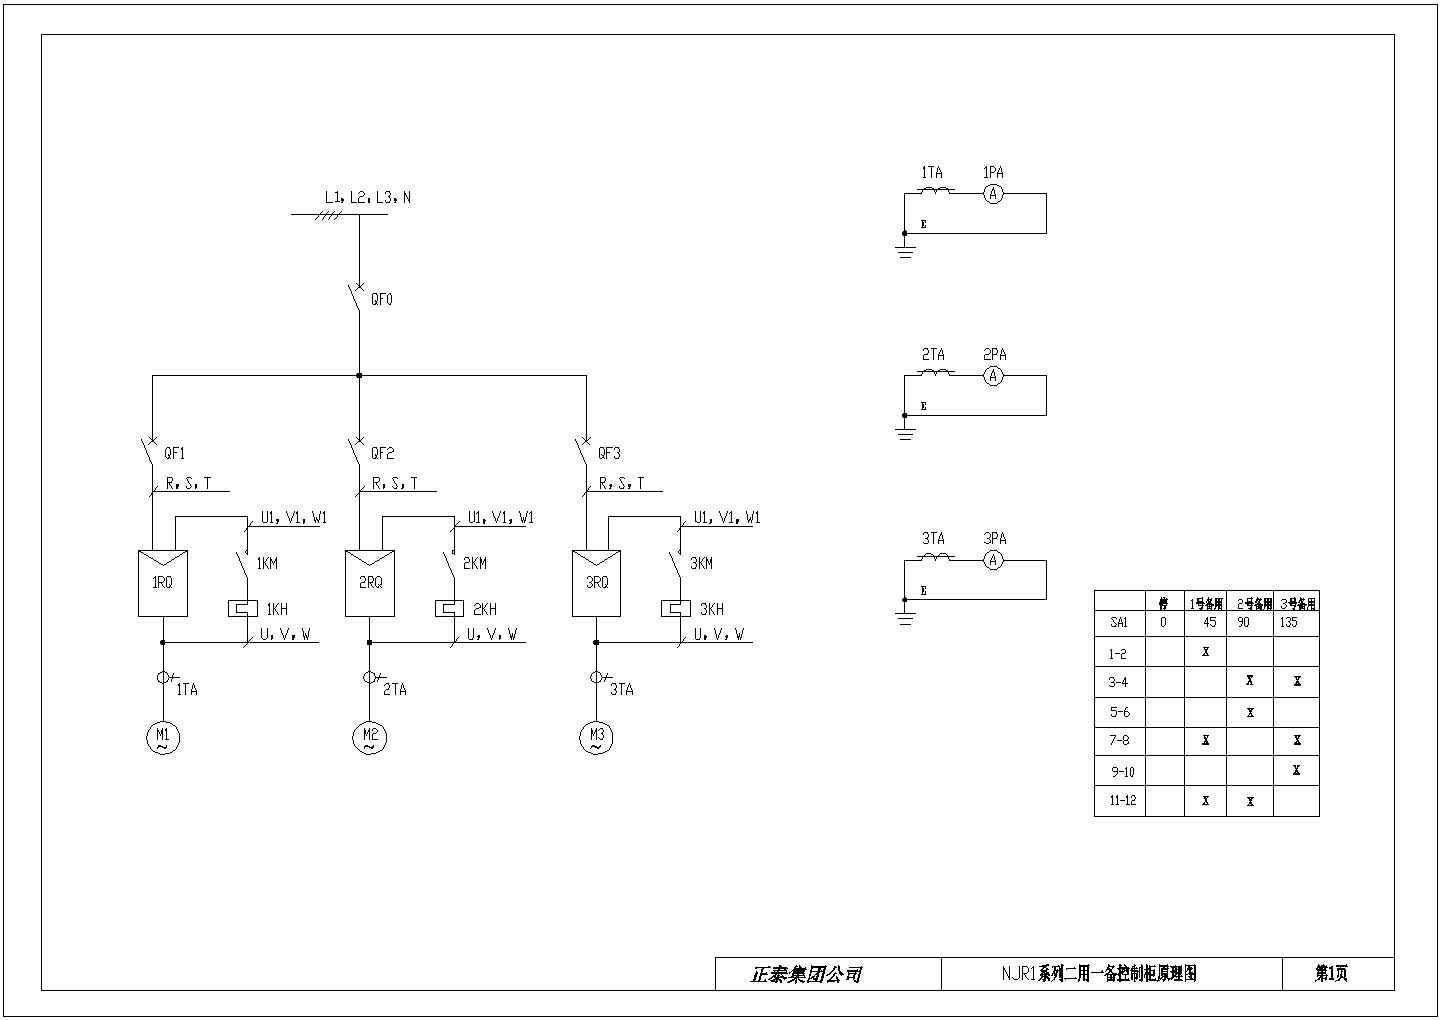 NJRI系列设备控制设计图